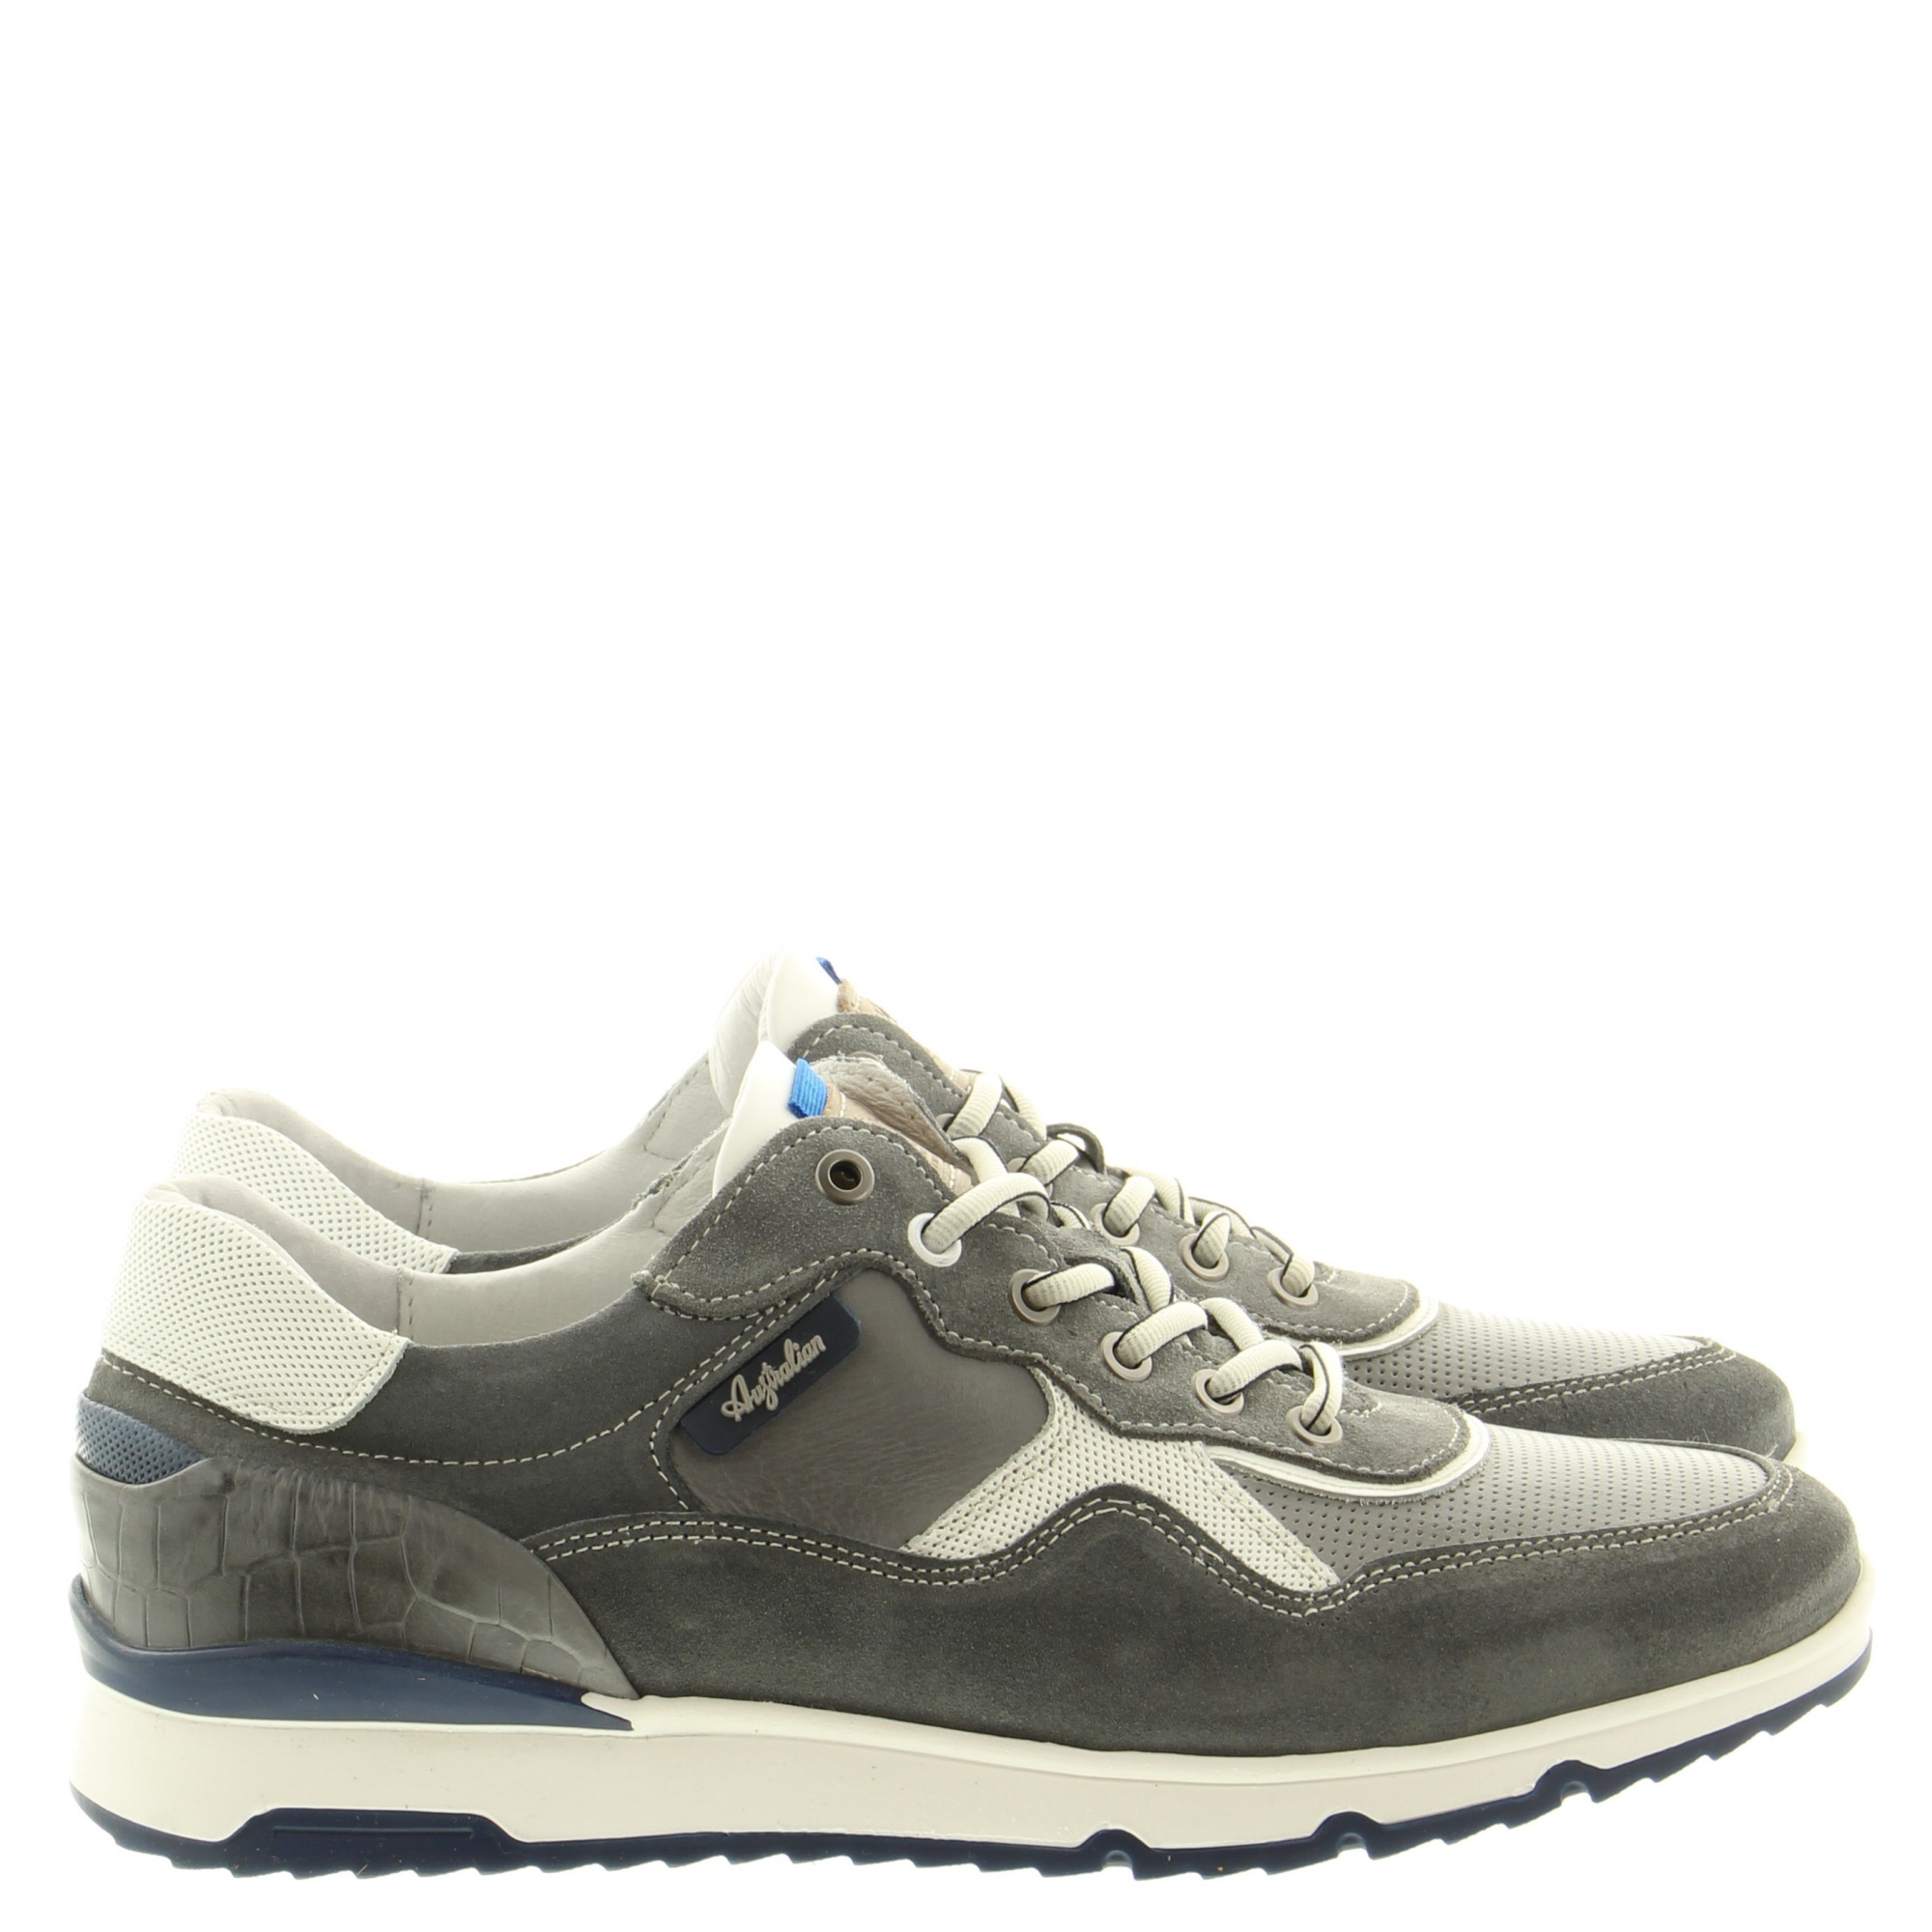 Australian Footwear Mazoni 15.1519.01 KC6 Grey-White-Blue